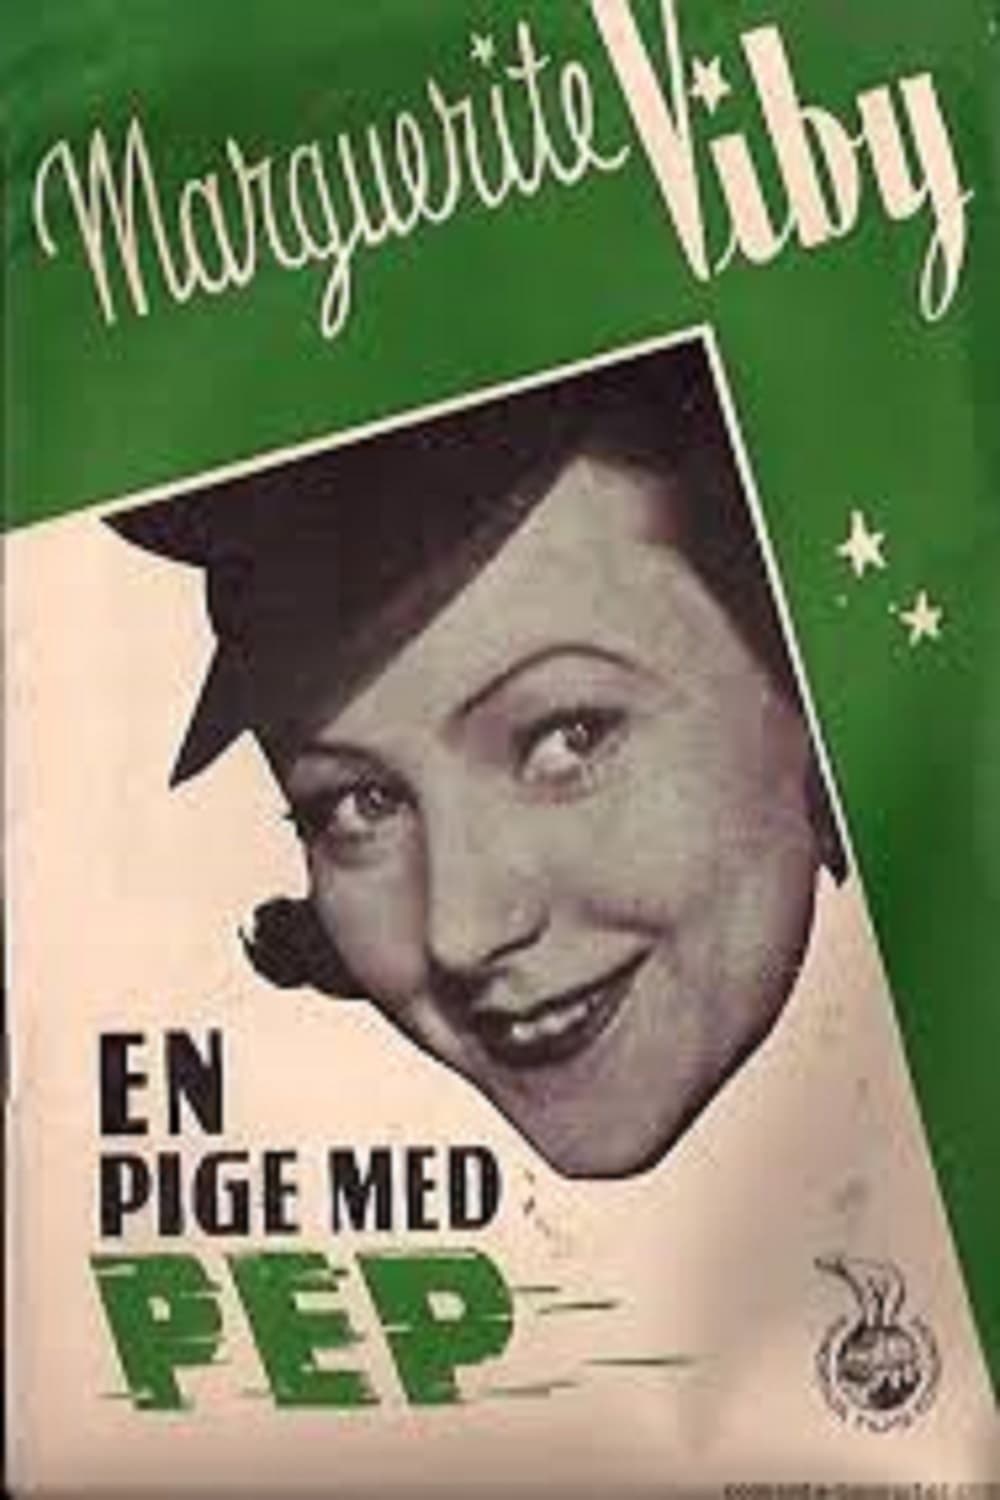 En pige med pep (1940)